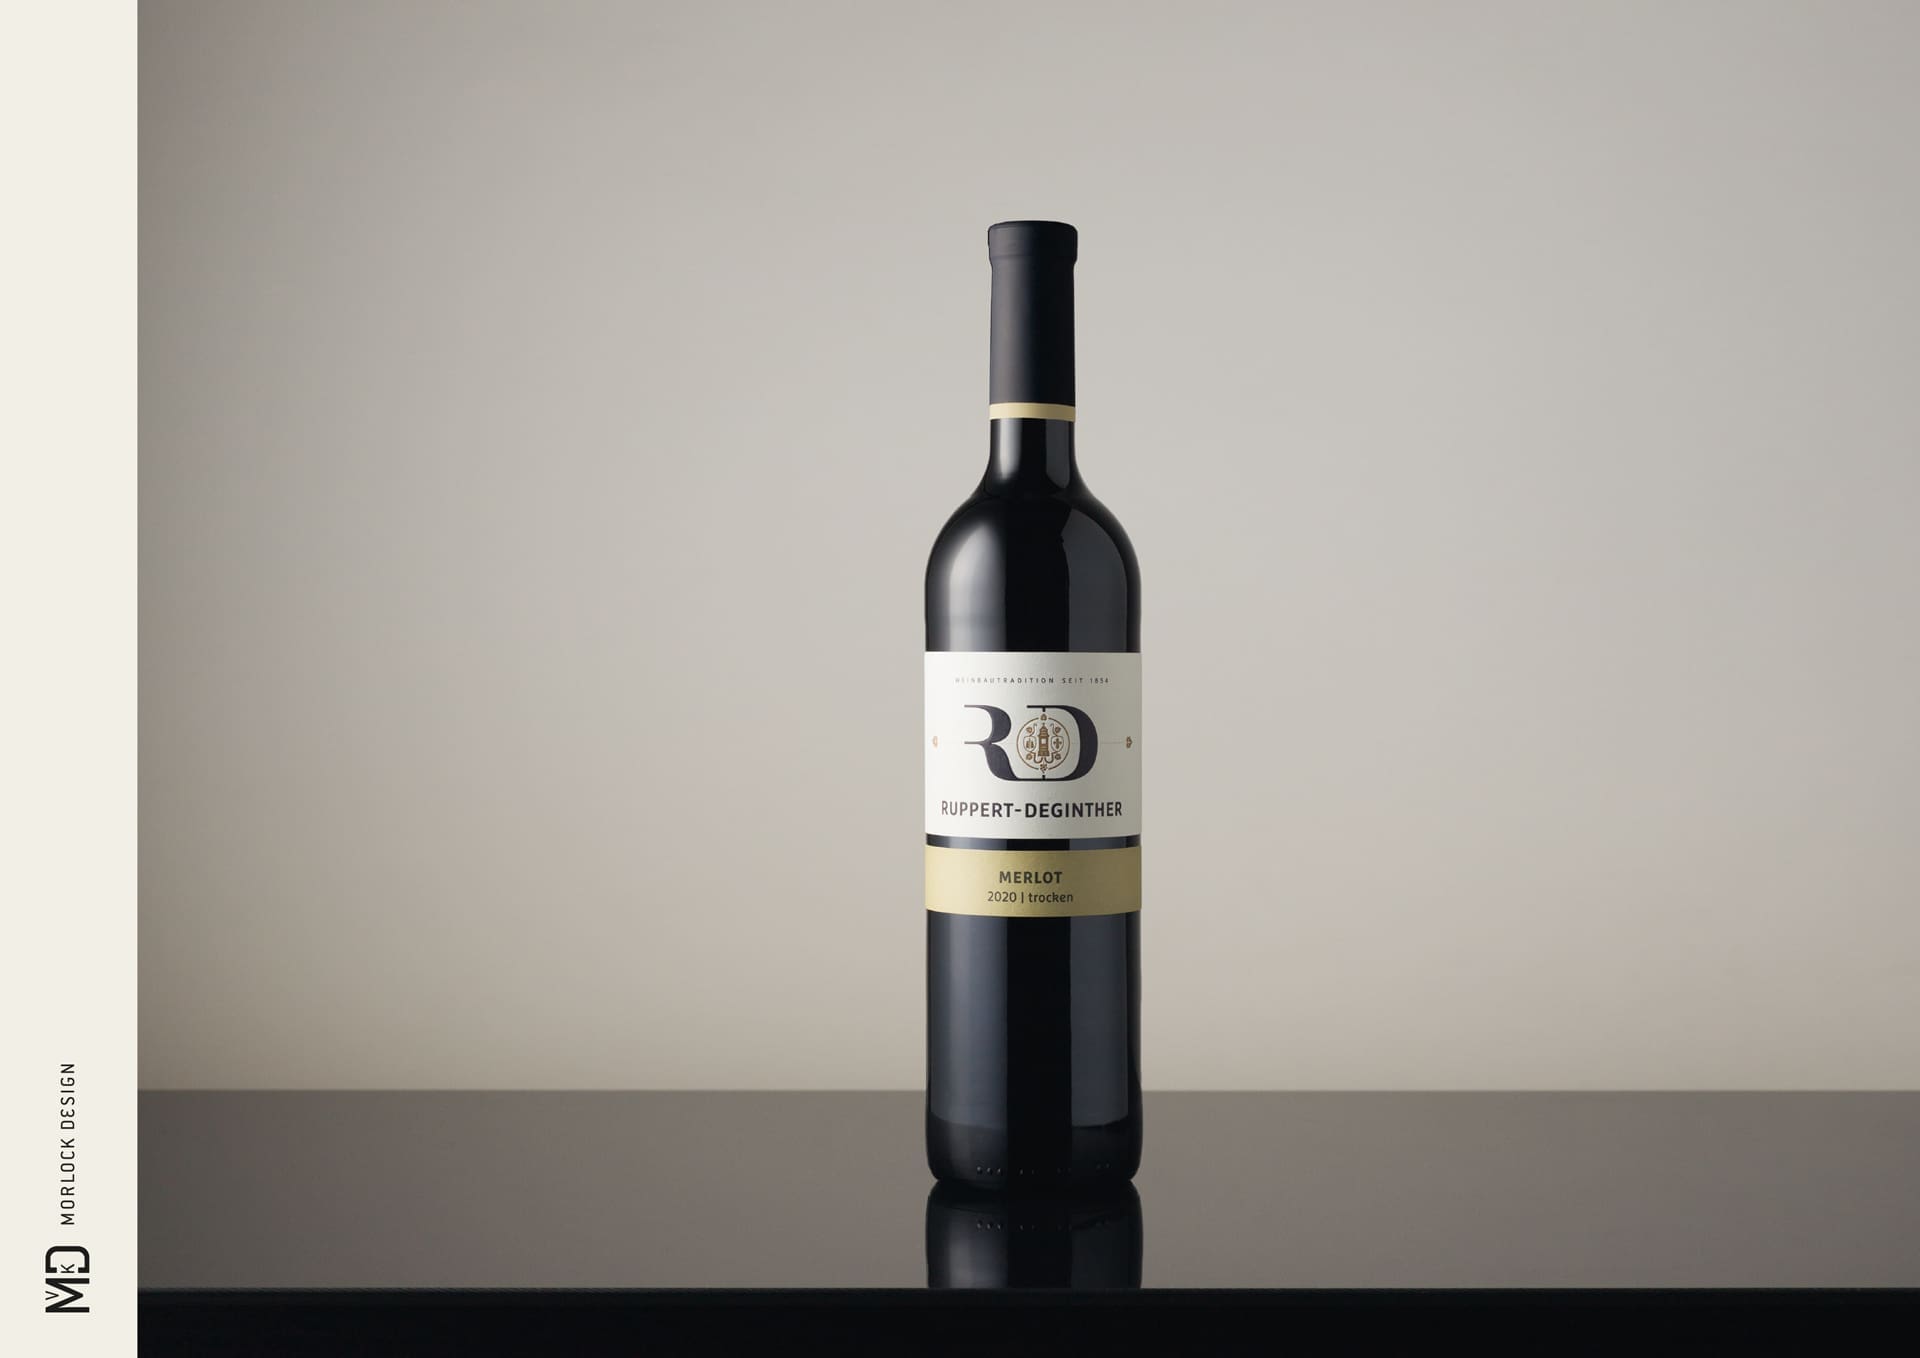 Corporate Identity Design für Ruppert-Deginther | Ein ausgezeichnetes Weingut in Rheinhessen | Produkt-Fotoshooting der Gutsweine